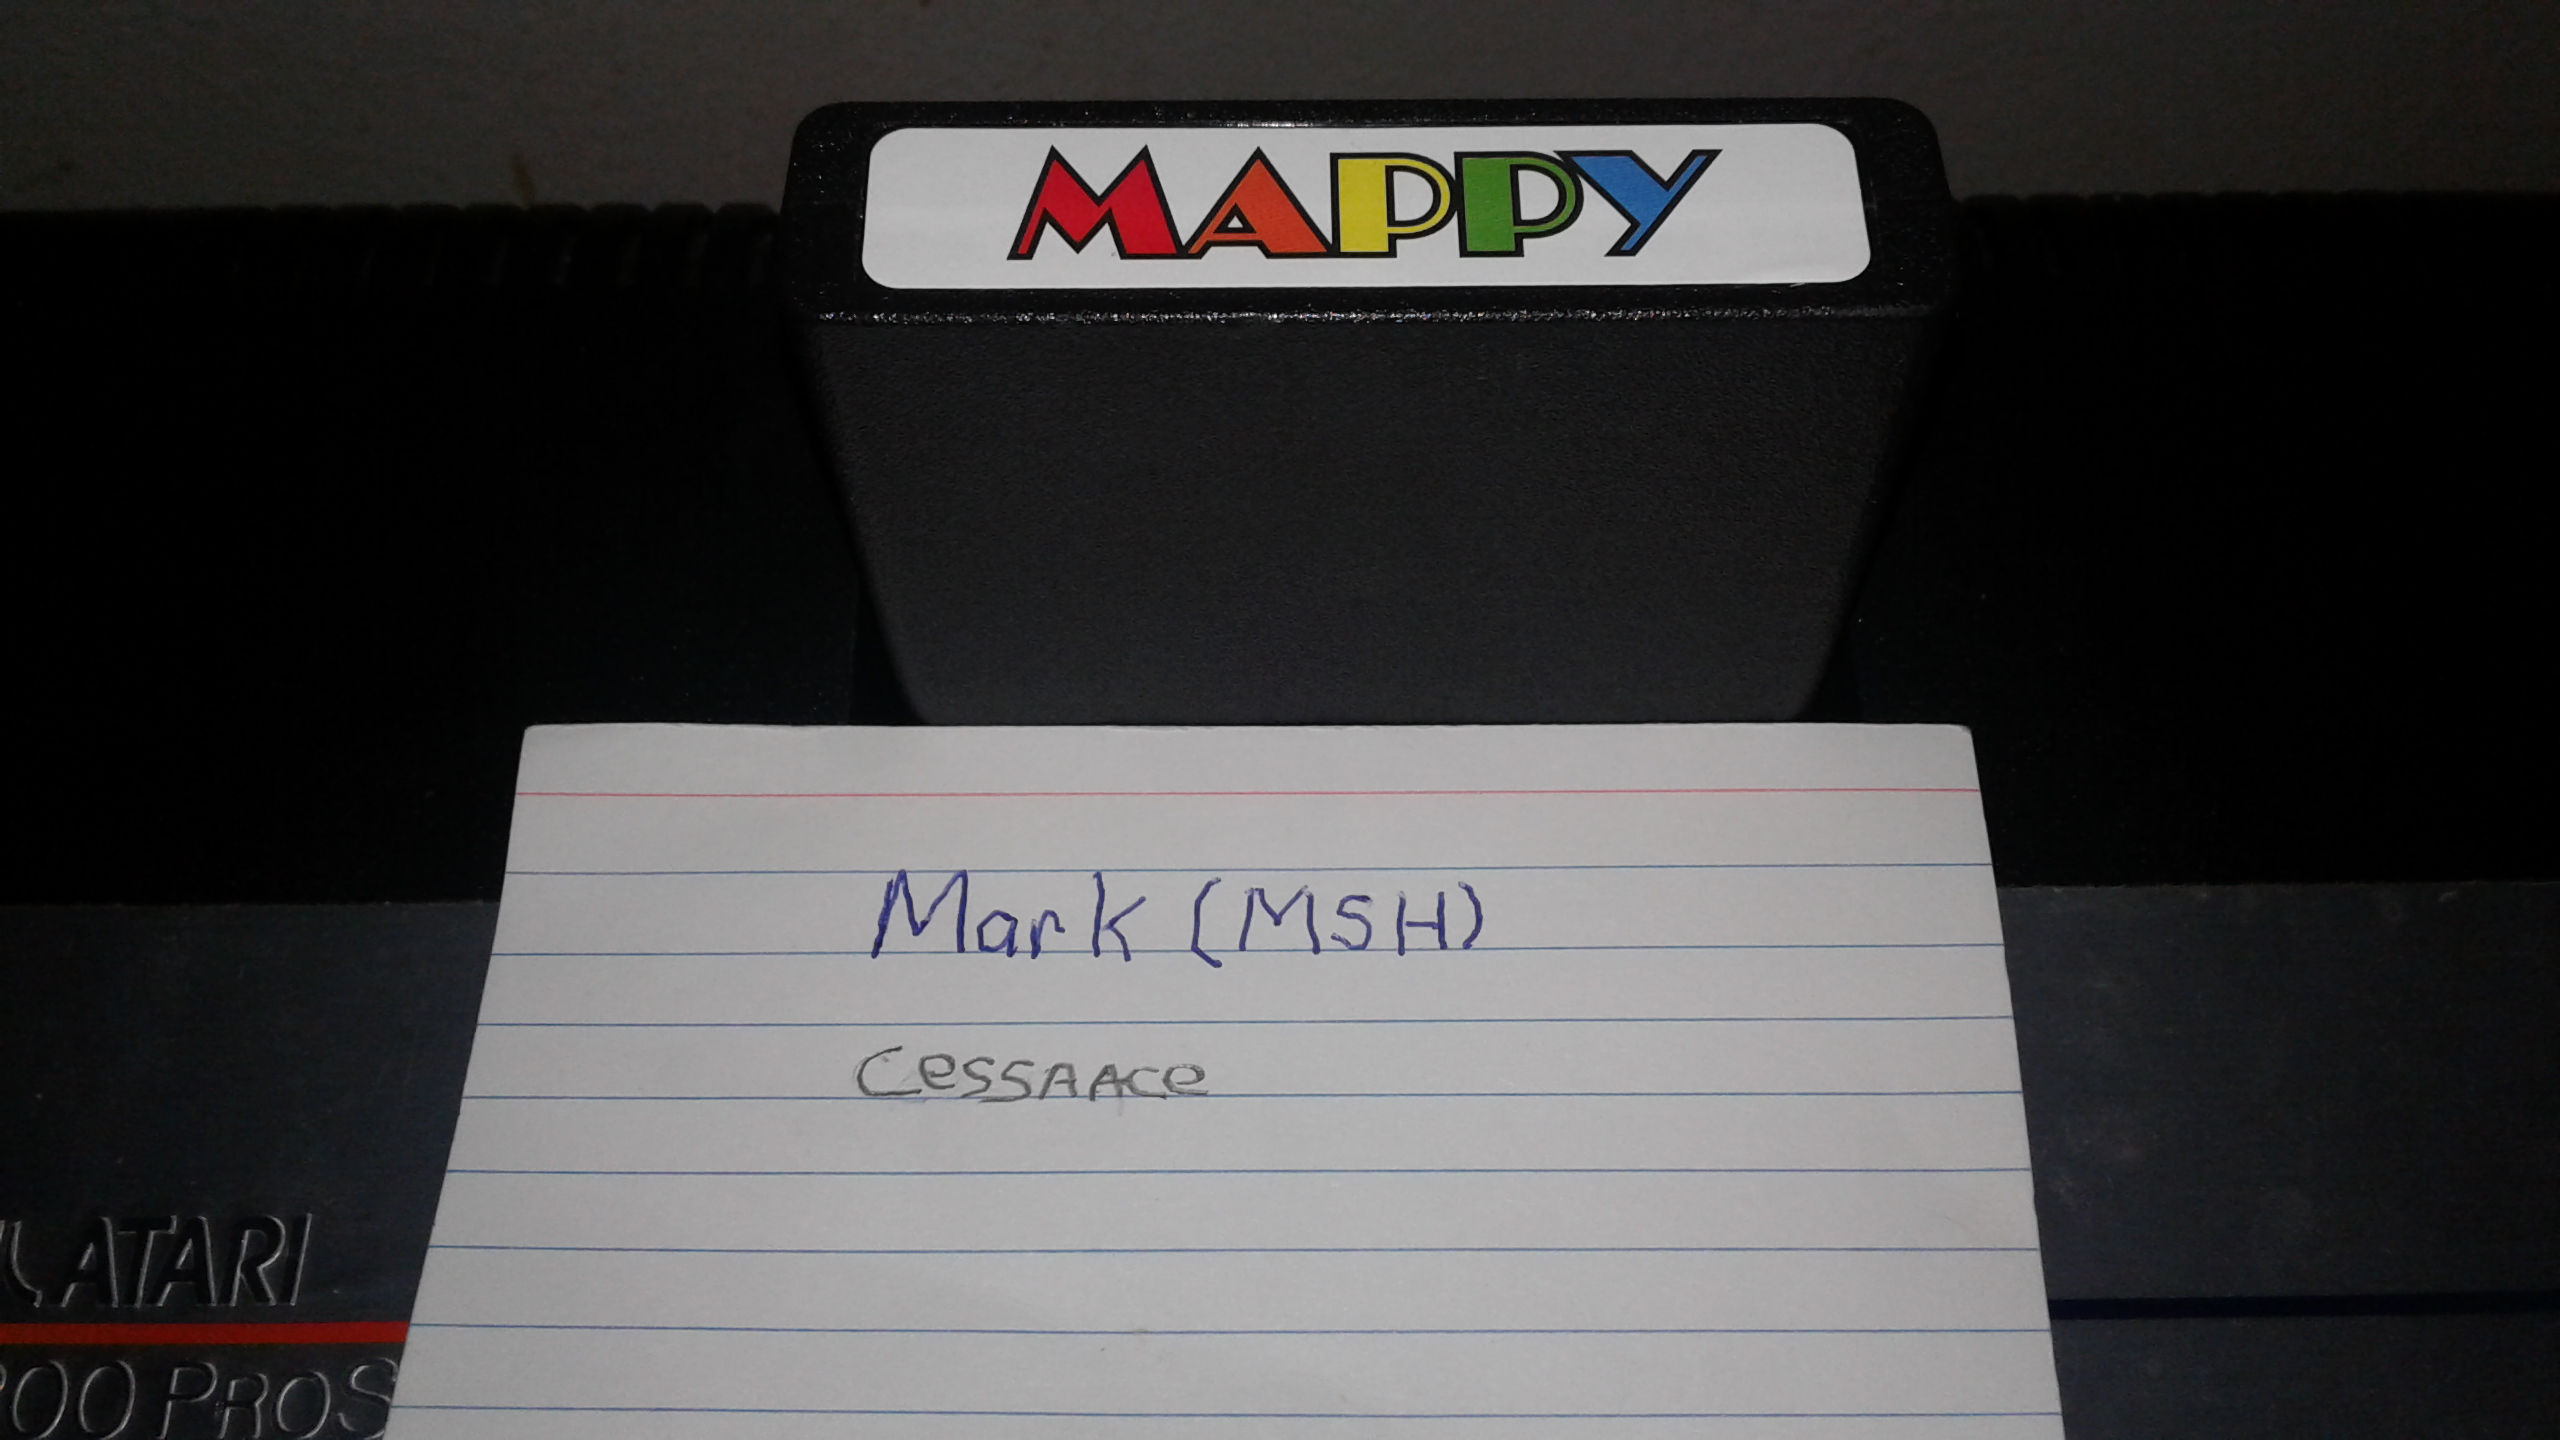 Mark: Mappy [Novice] (Atari 2600) 77,800 points on 2019-05-18 01:30:43